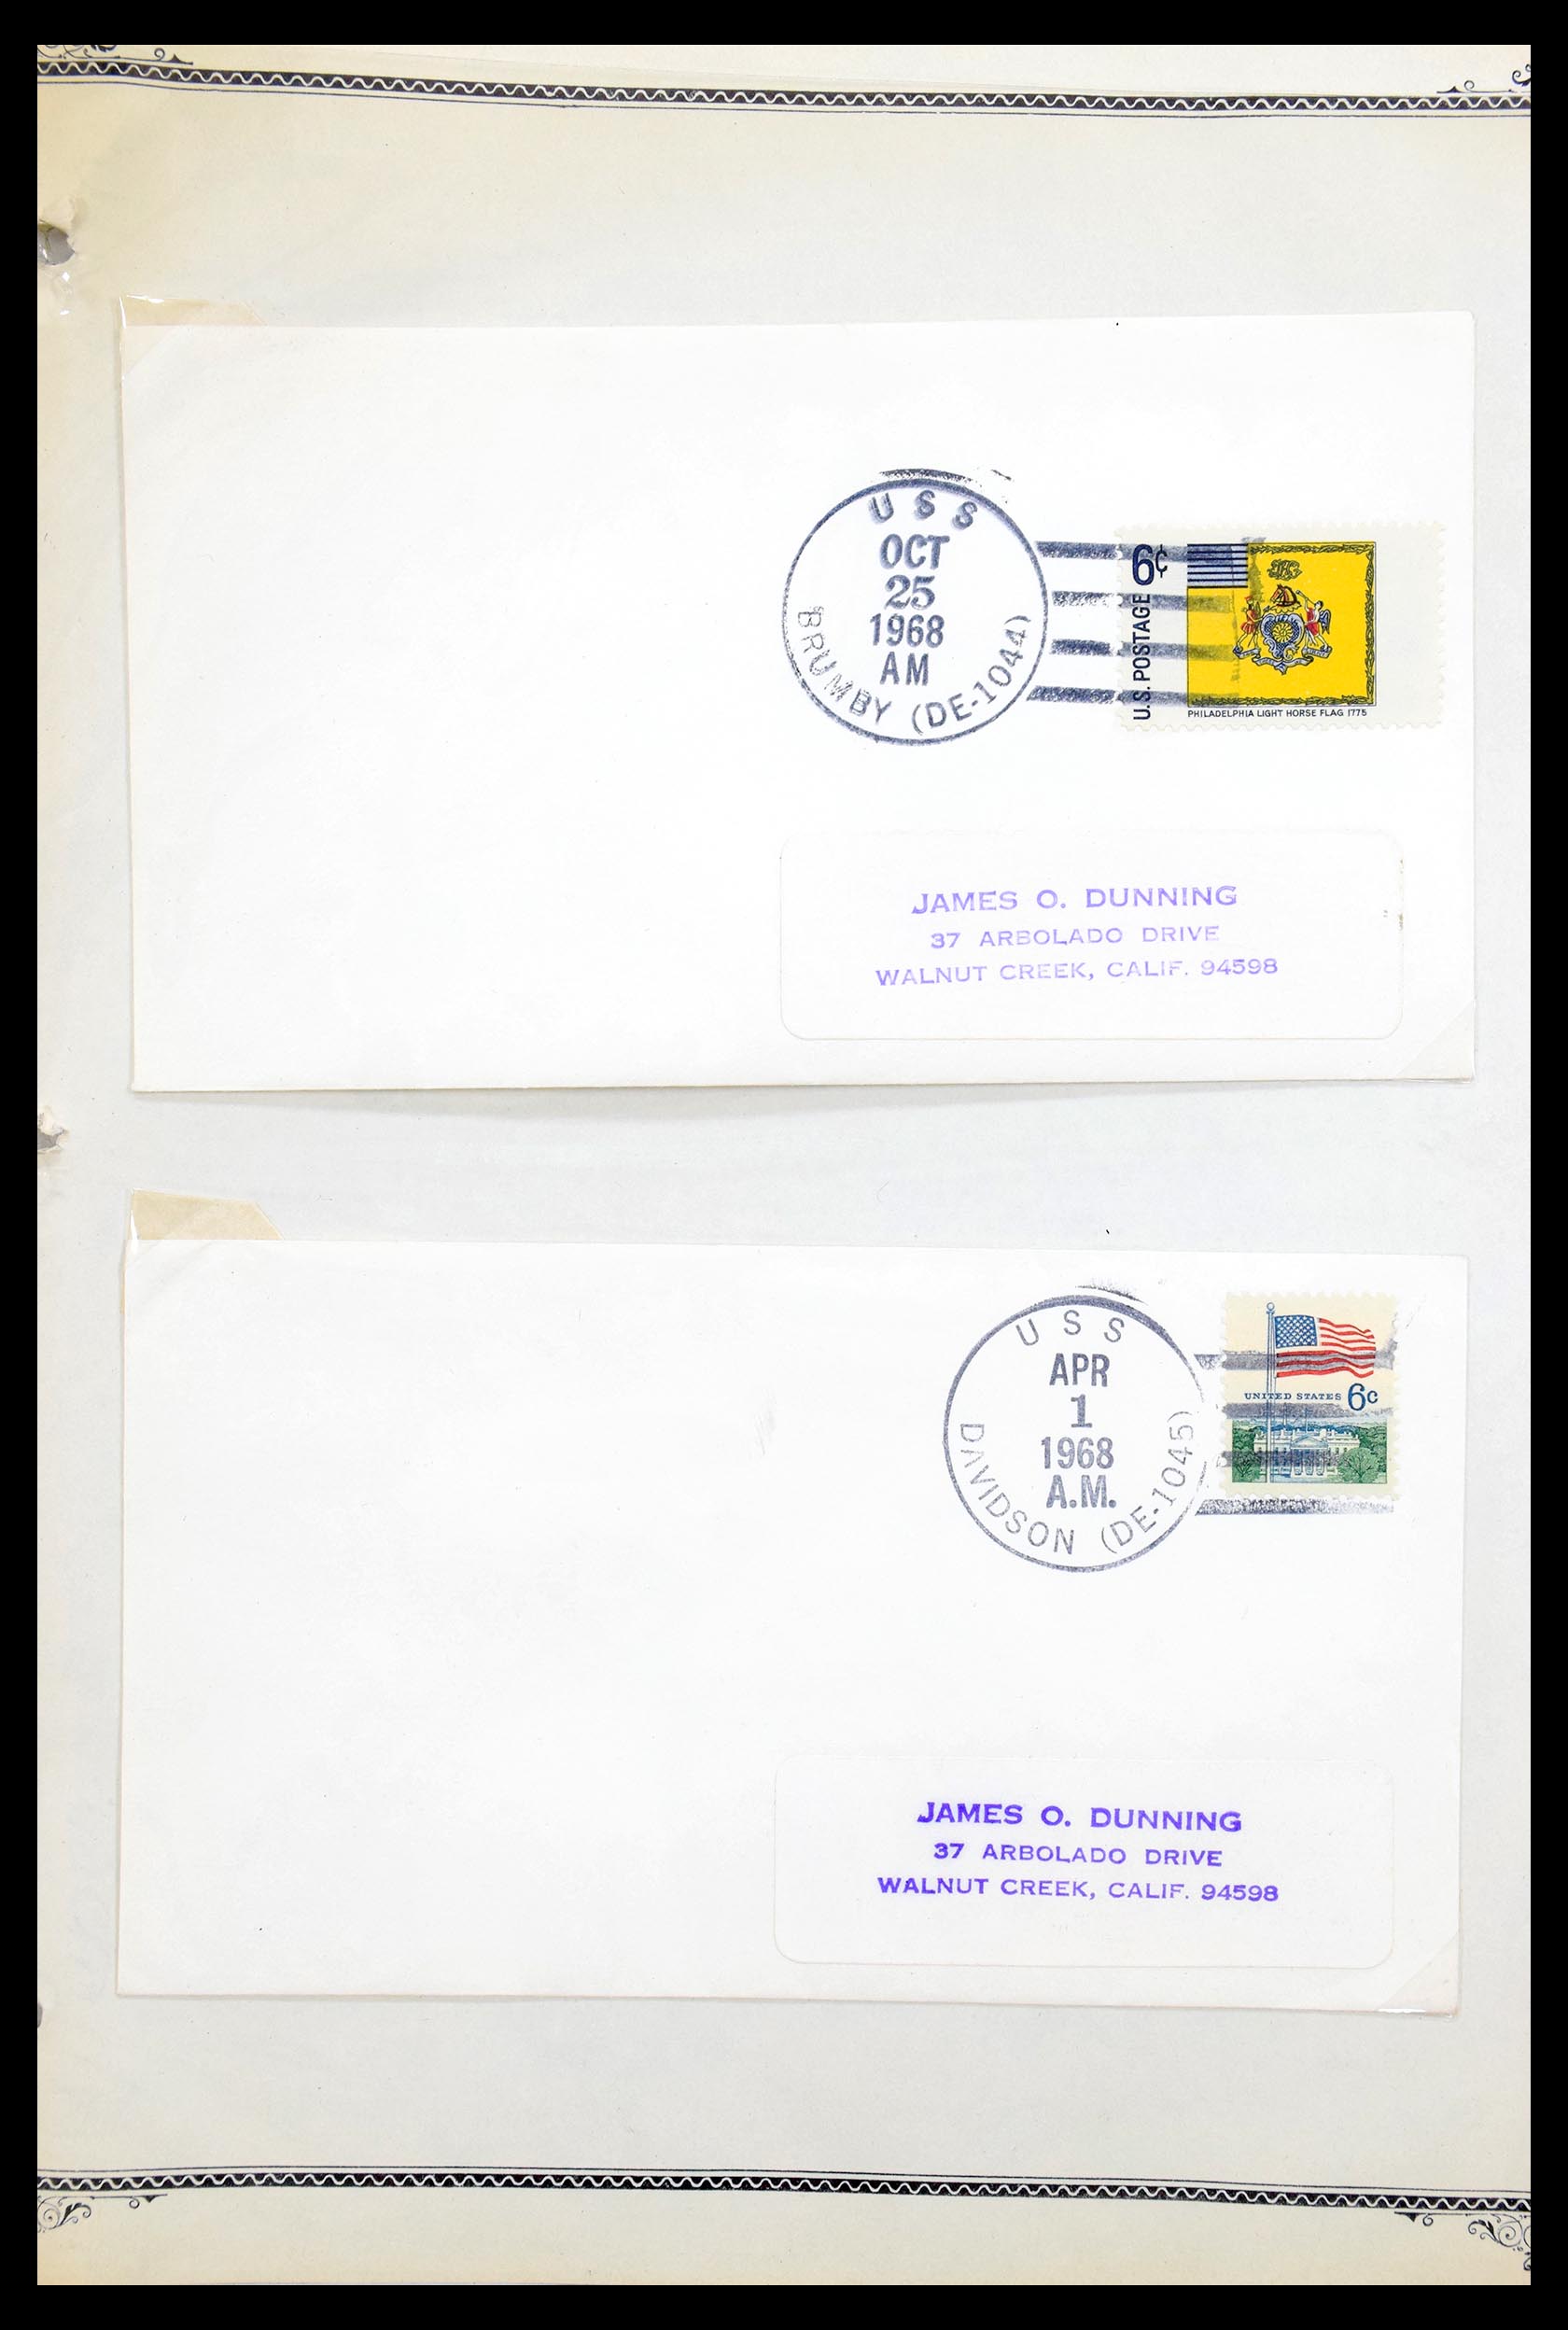 30341 081 - 30341 USA scheepspost brieven 1930-1970.